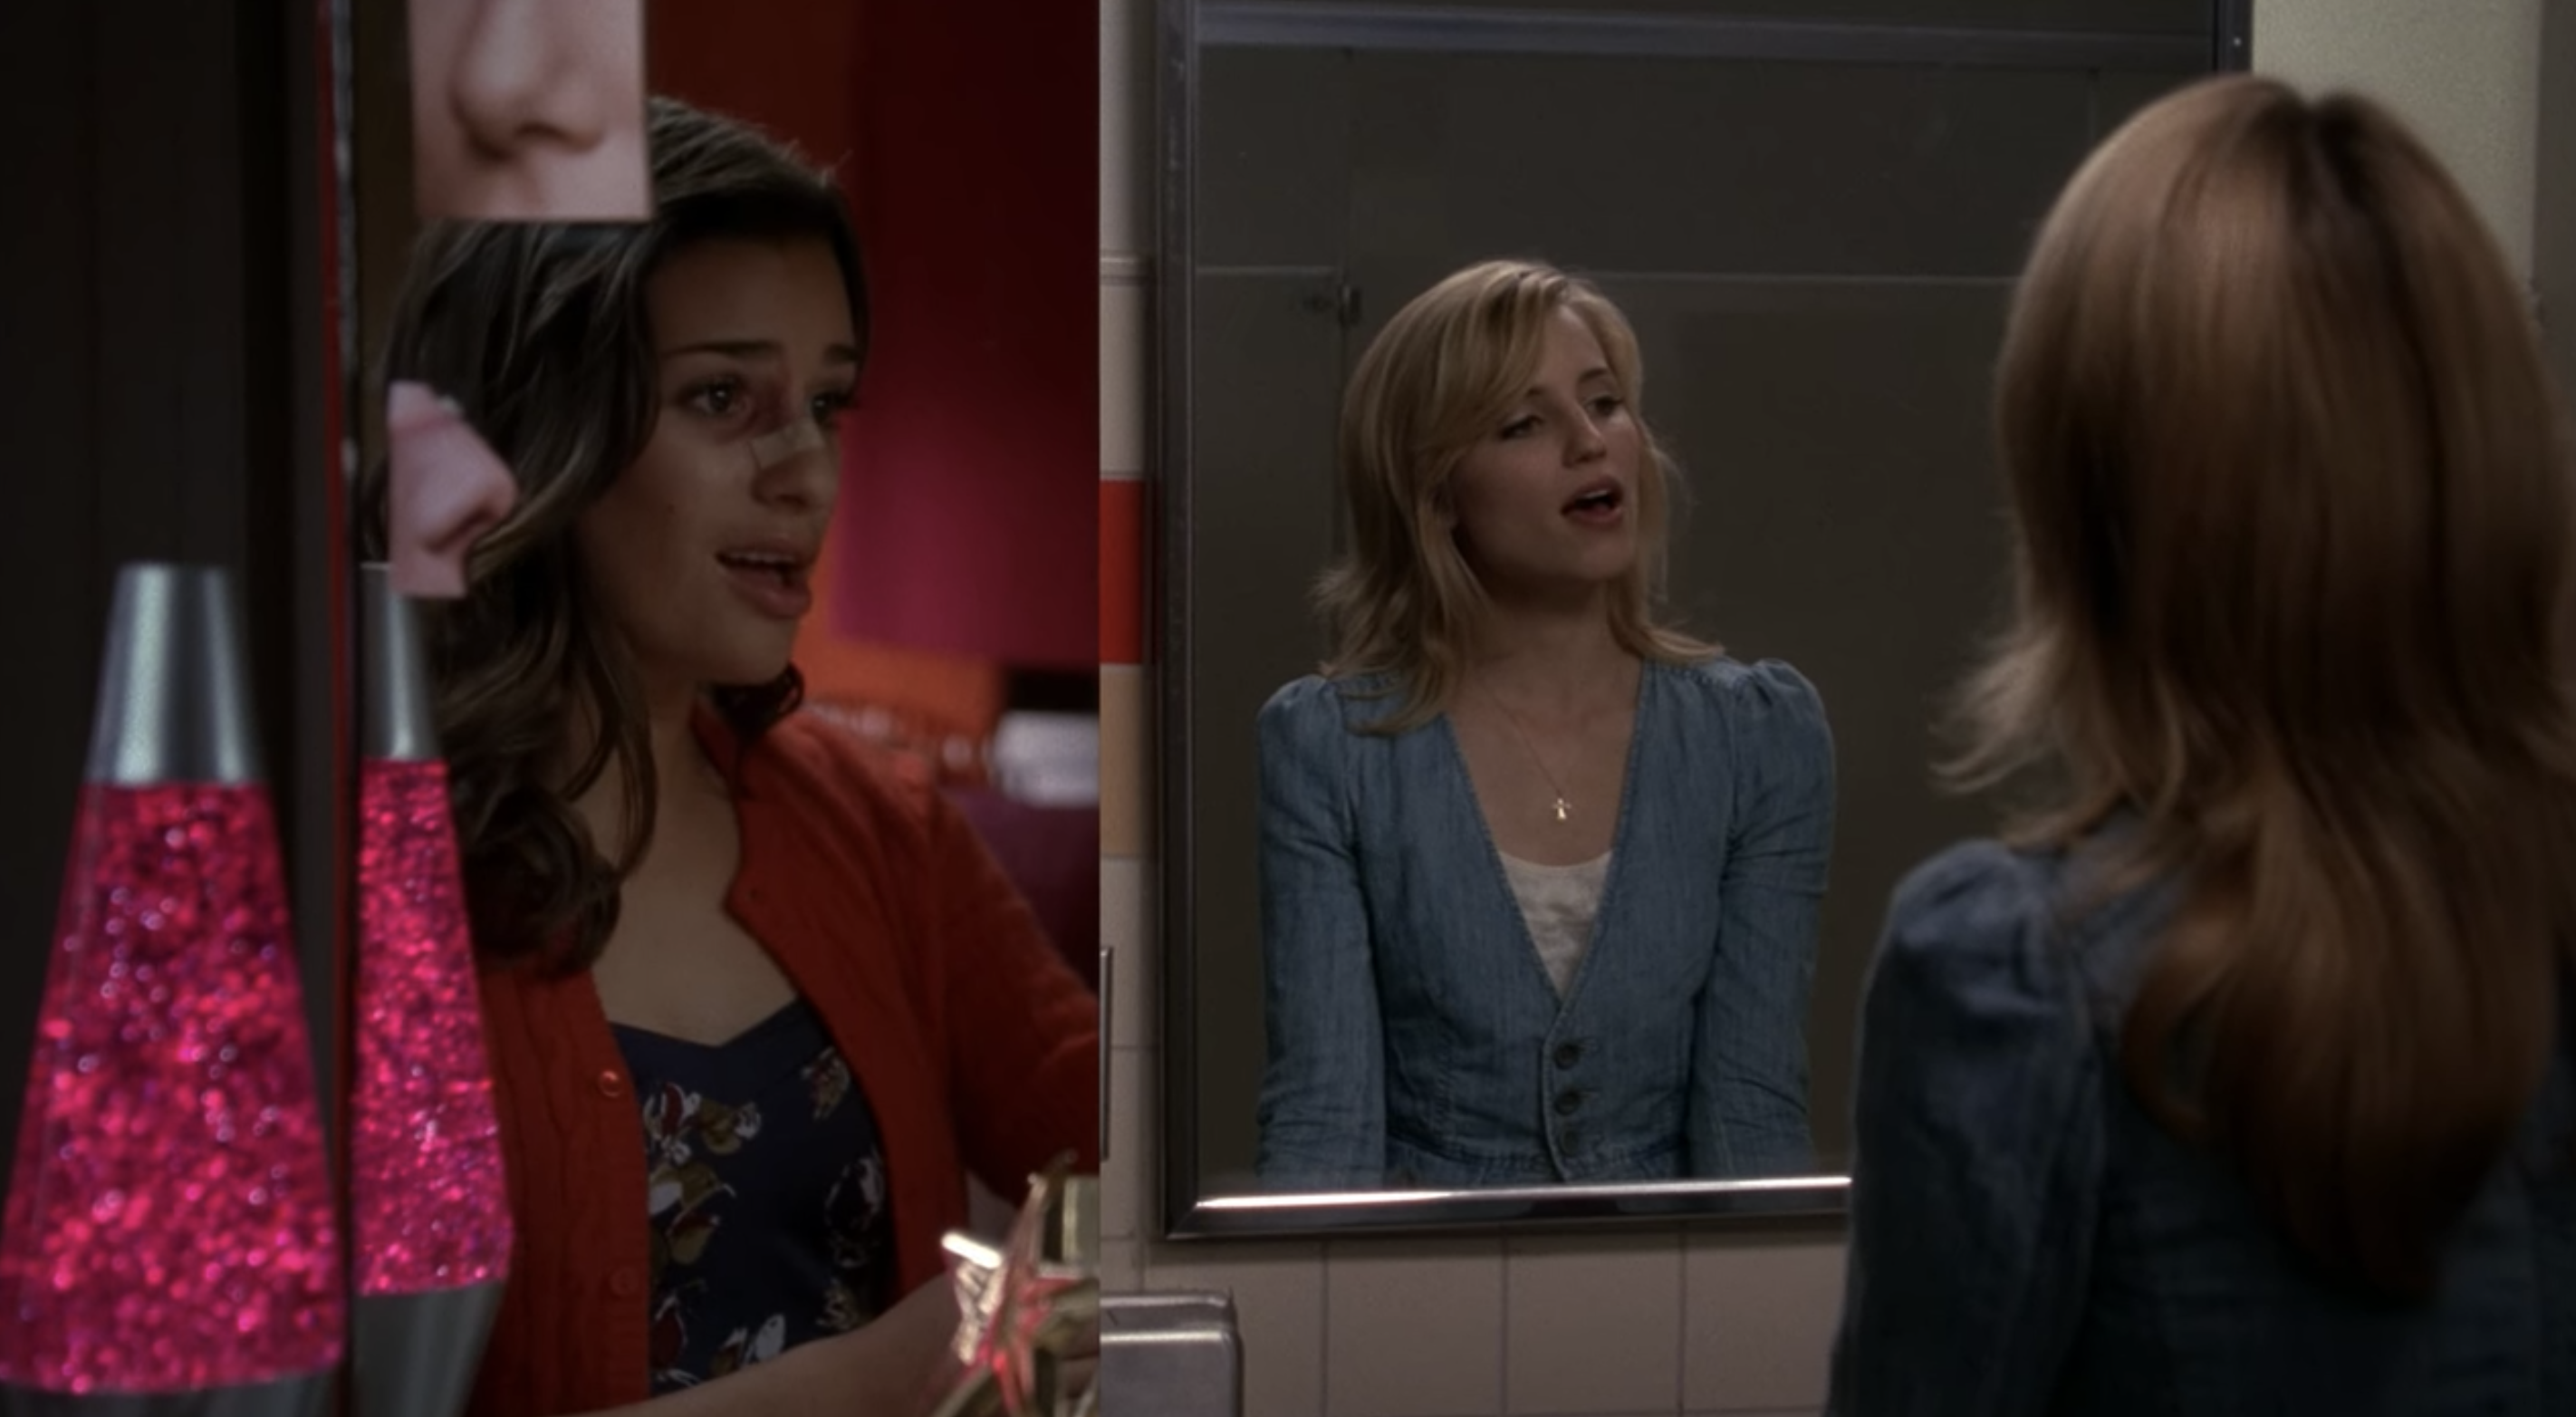 Rachel sings facing the mirror in her room while Quinn sings facing the mirror in the school bathroom